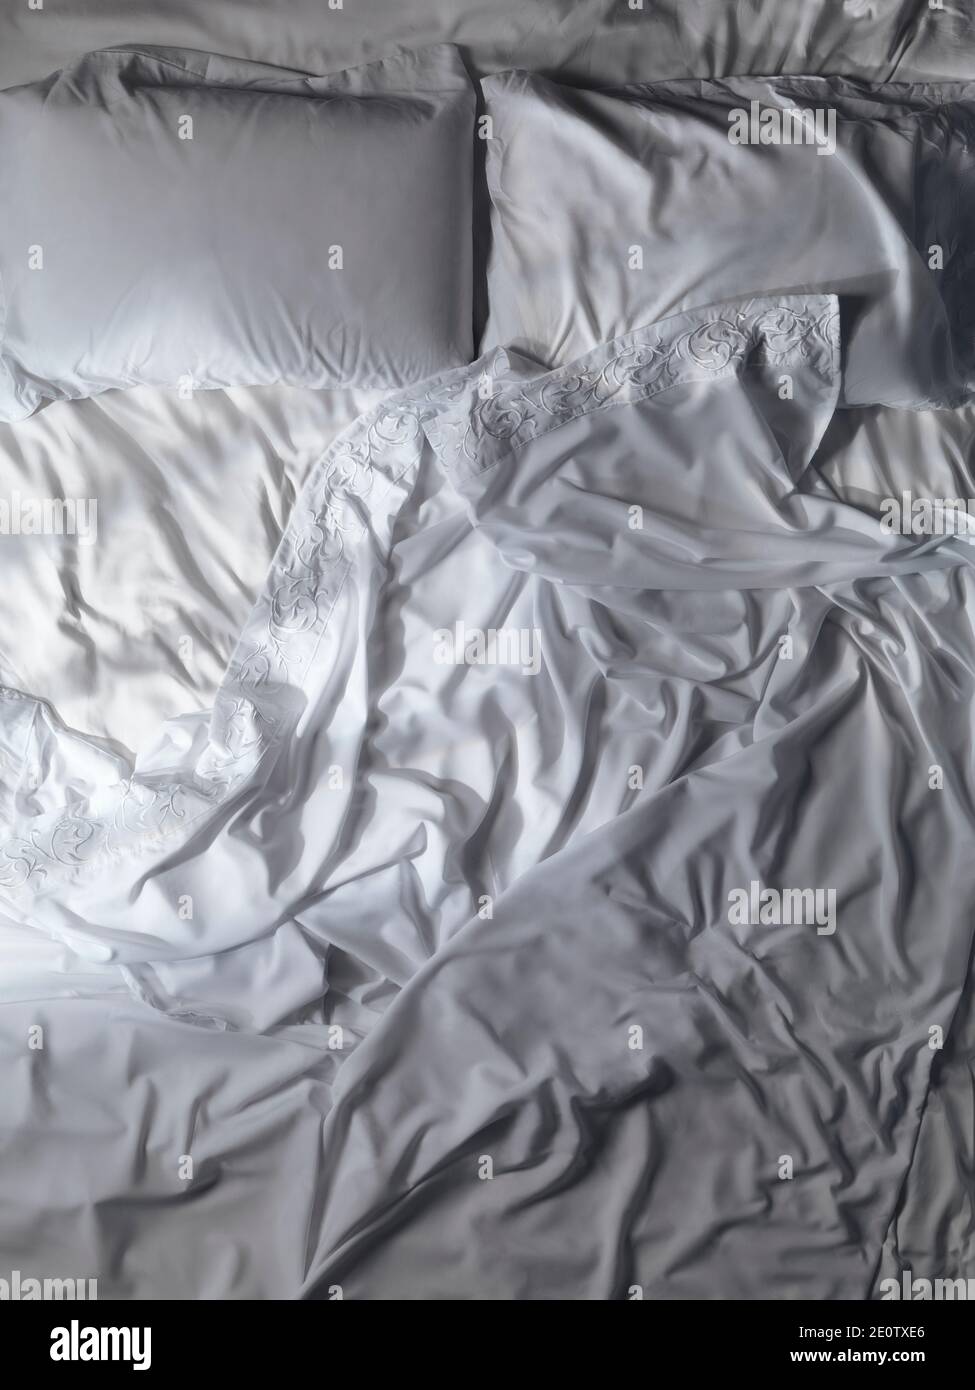 Ungemachtes leeres Bett, weiße Spitzen, unordentliche, zerknittert gefurtete Bettlaken und Kissen. Künstlerischer Hintergrund, Blick von oben. Stockfoto